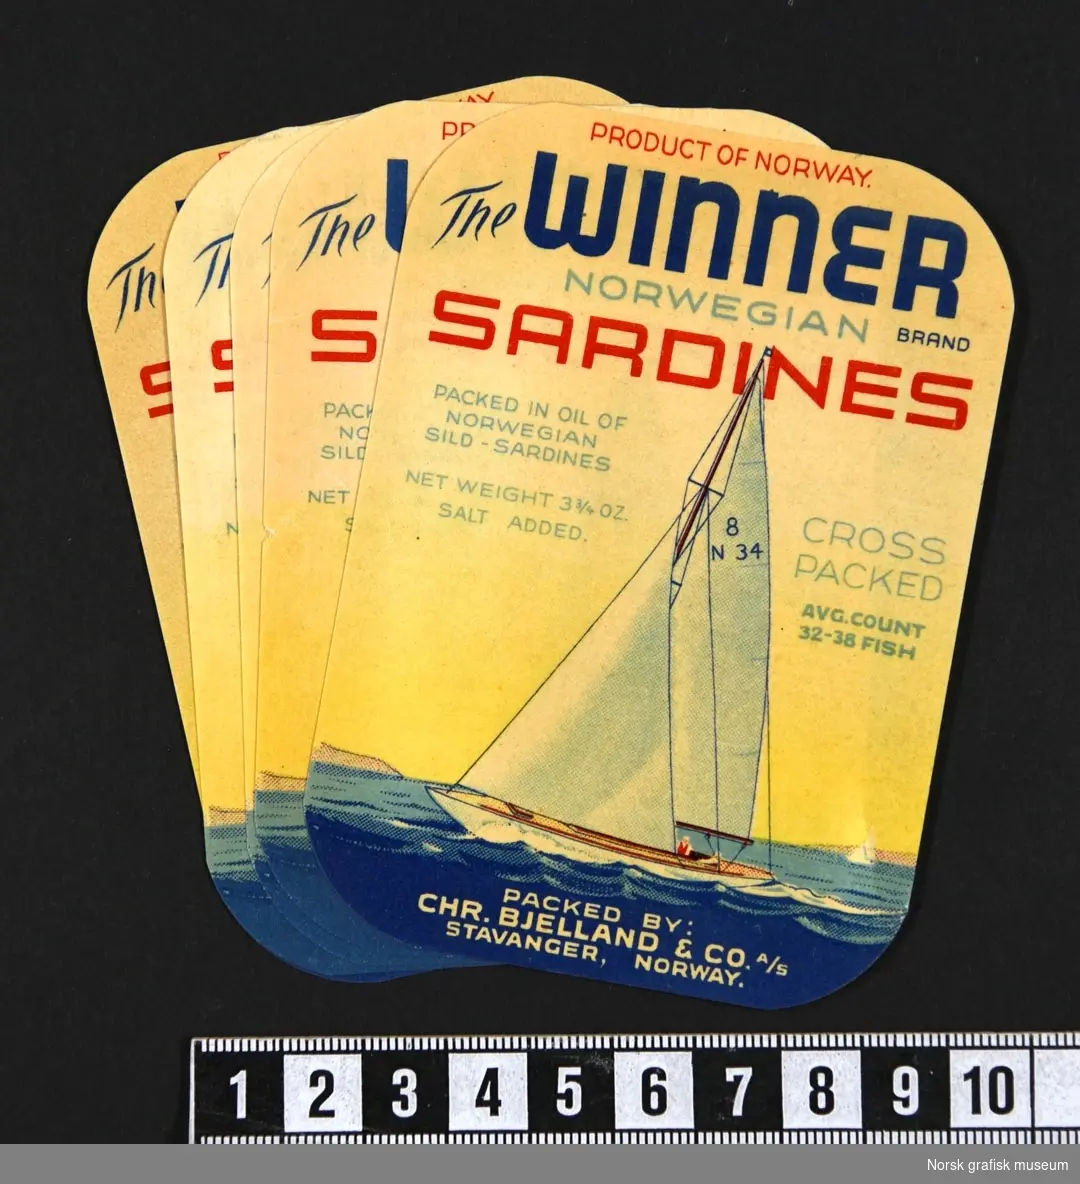 Etiketter med fremstilling av en seilbåt med hvite seil, på blått hav, under en gul himmel. 

"Sardines packed in oil of Norwegian sild- sardines"